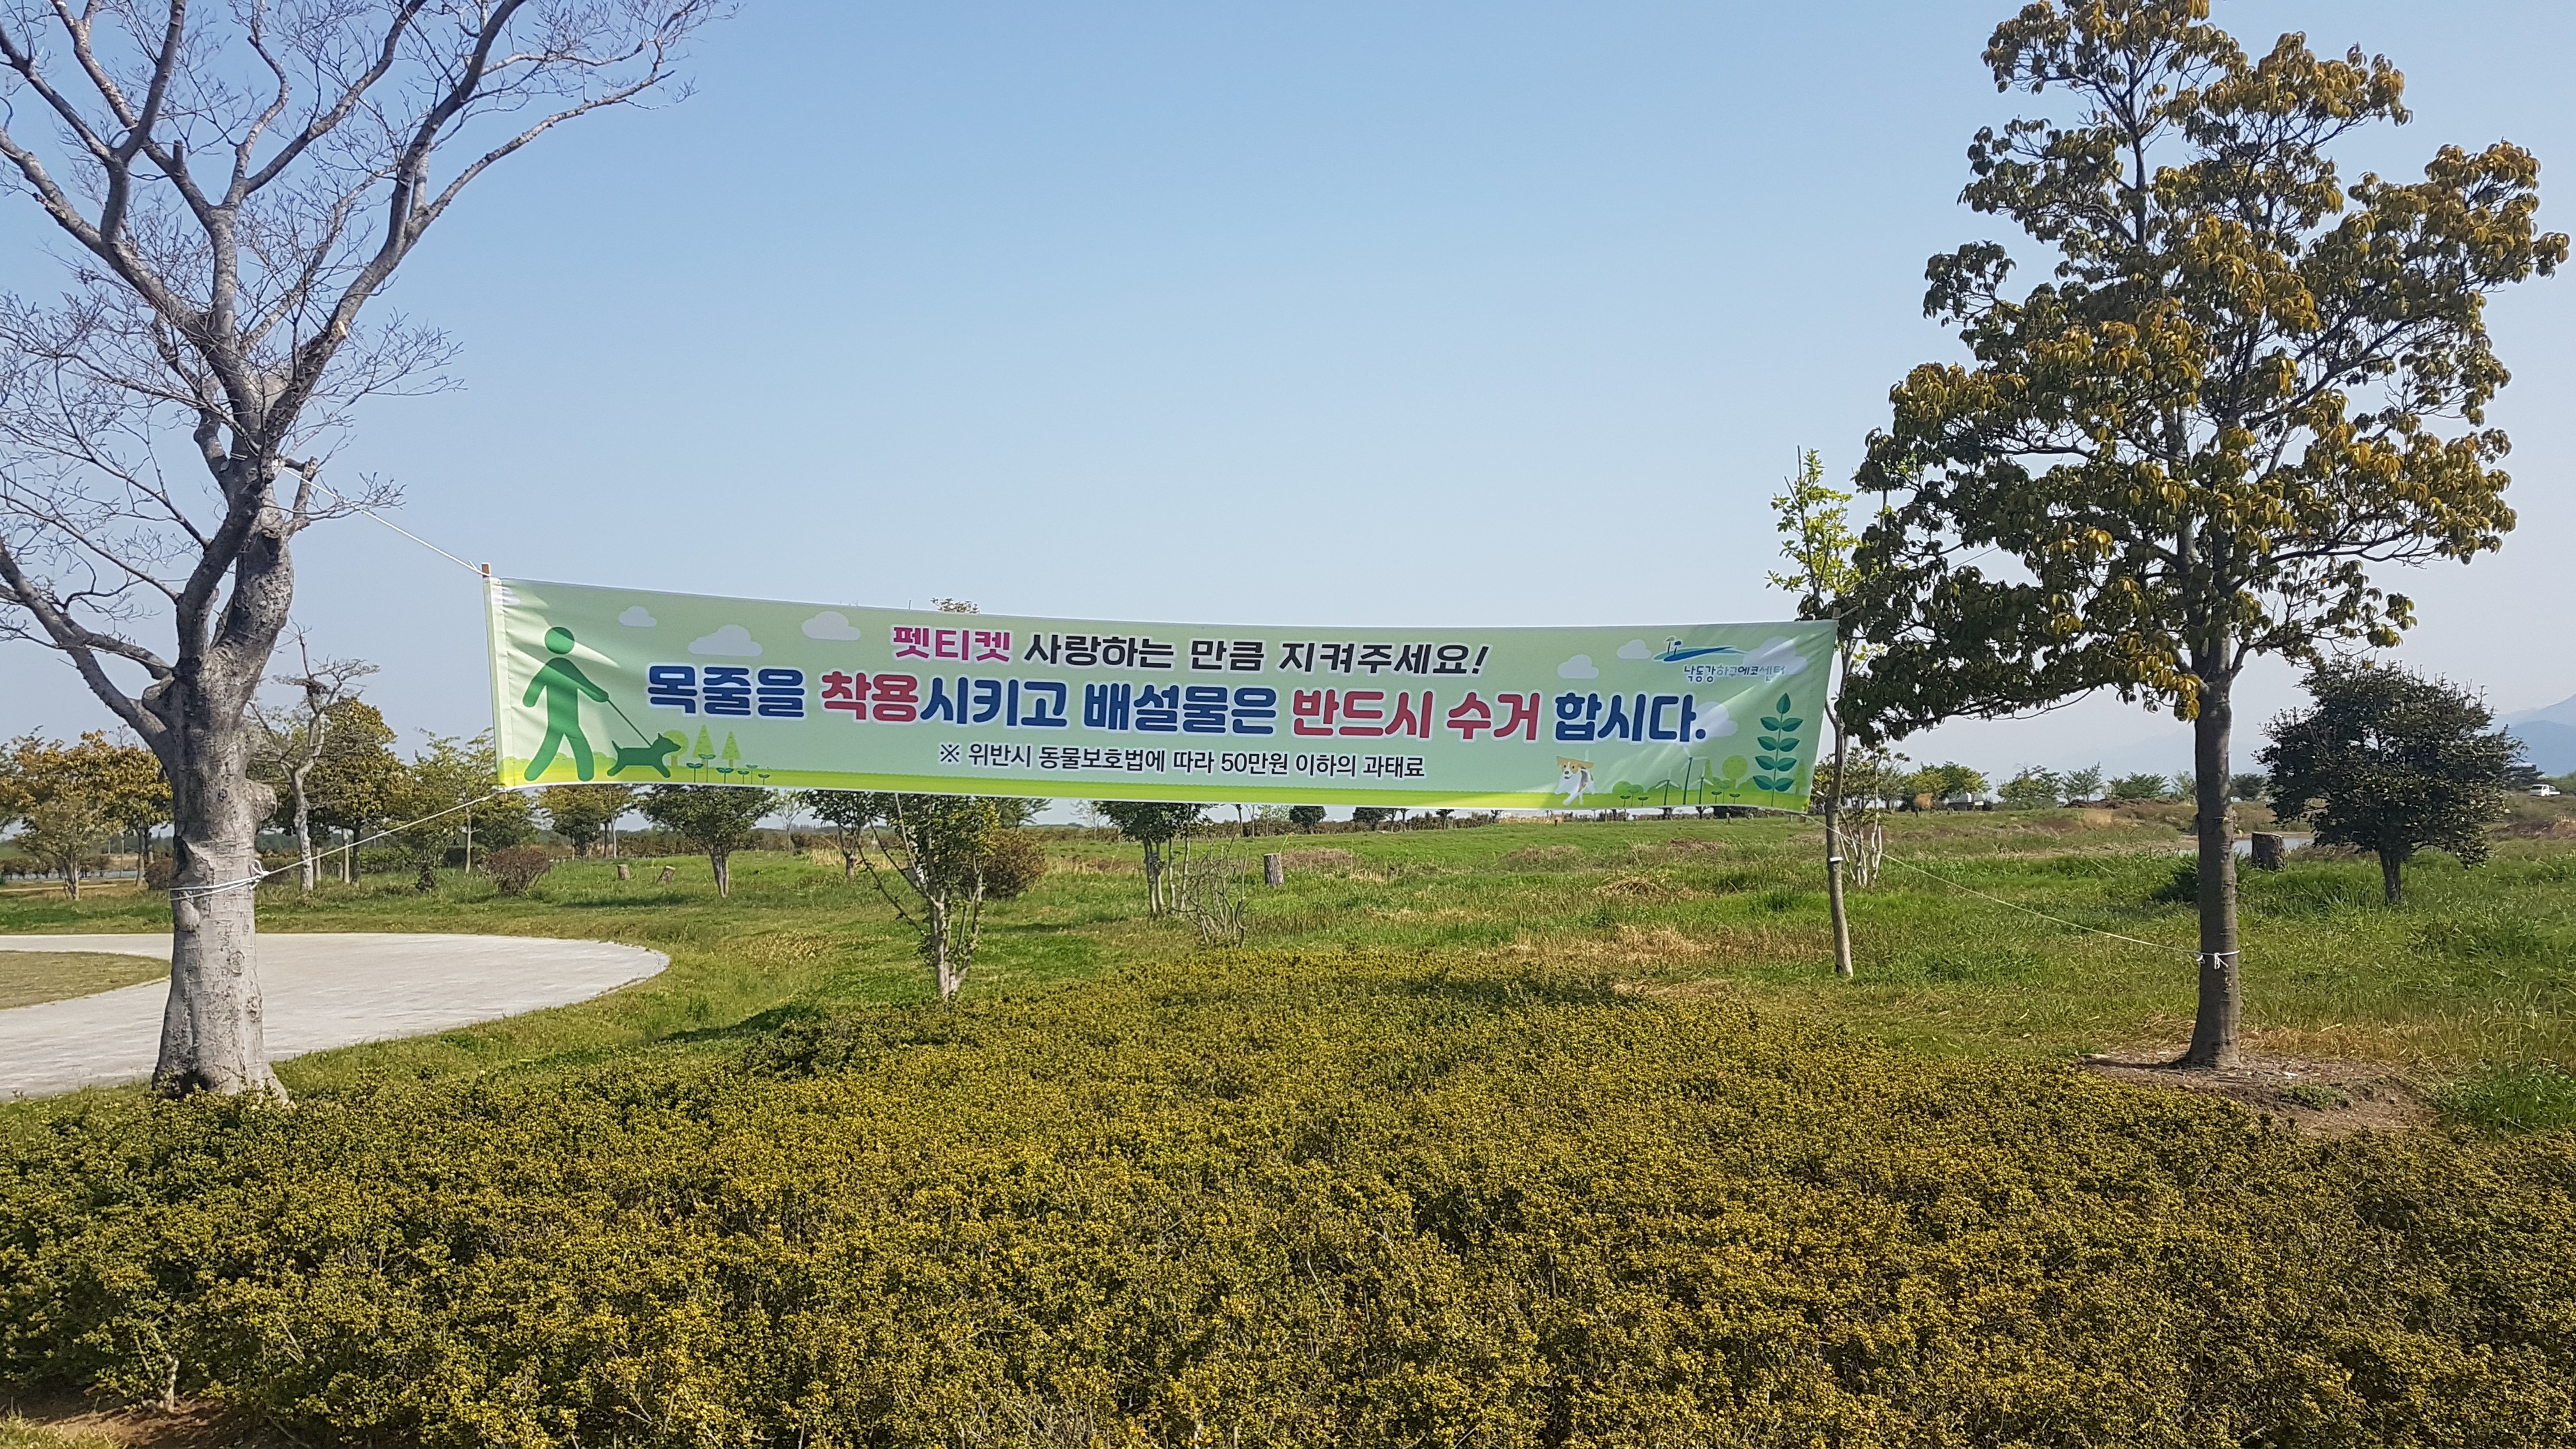 생태공원 내 현수막